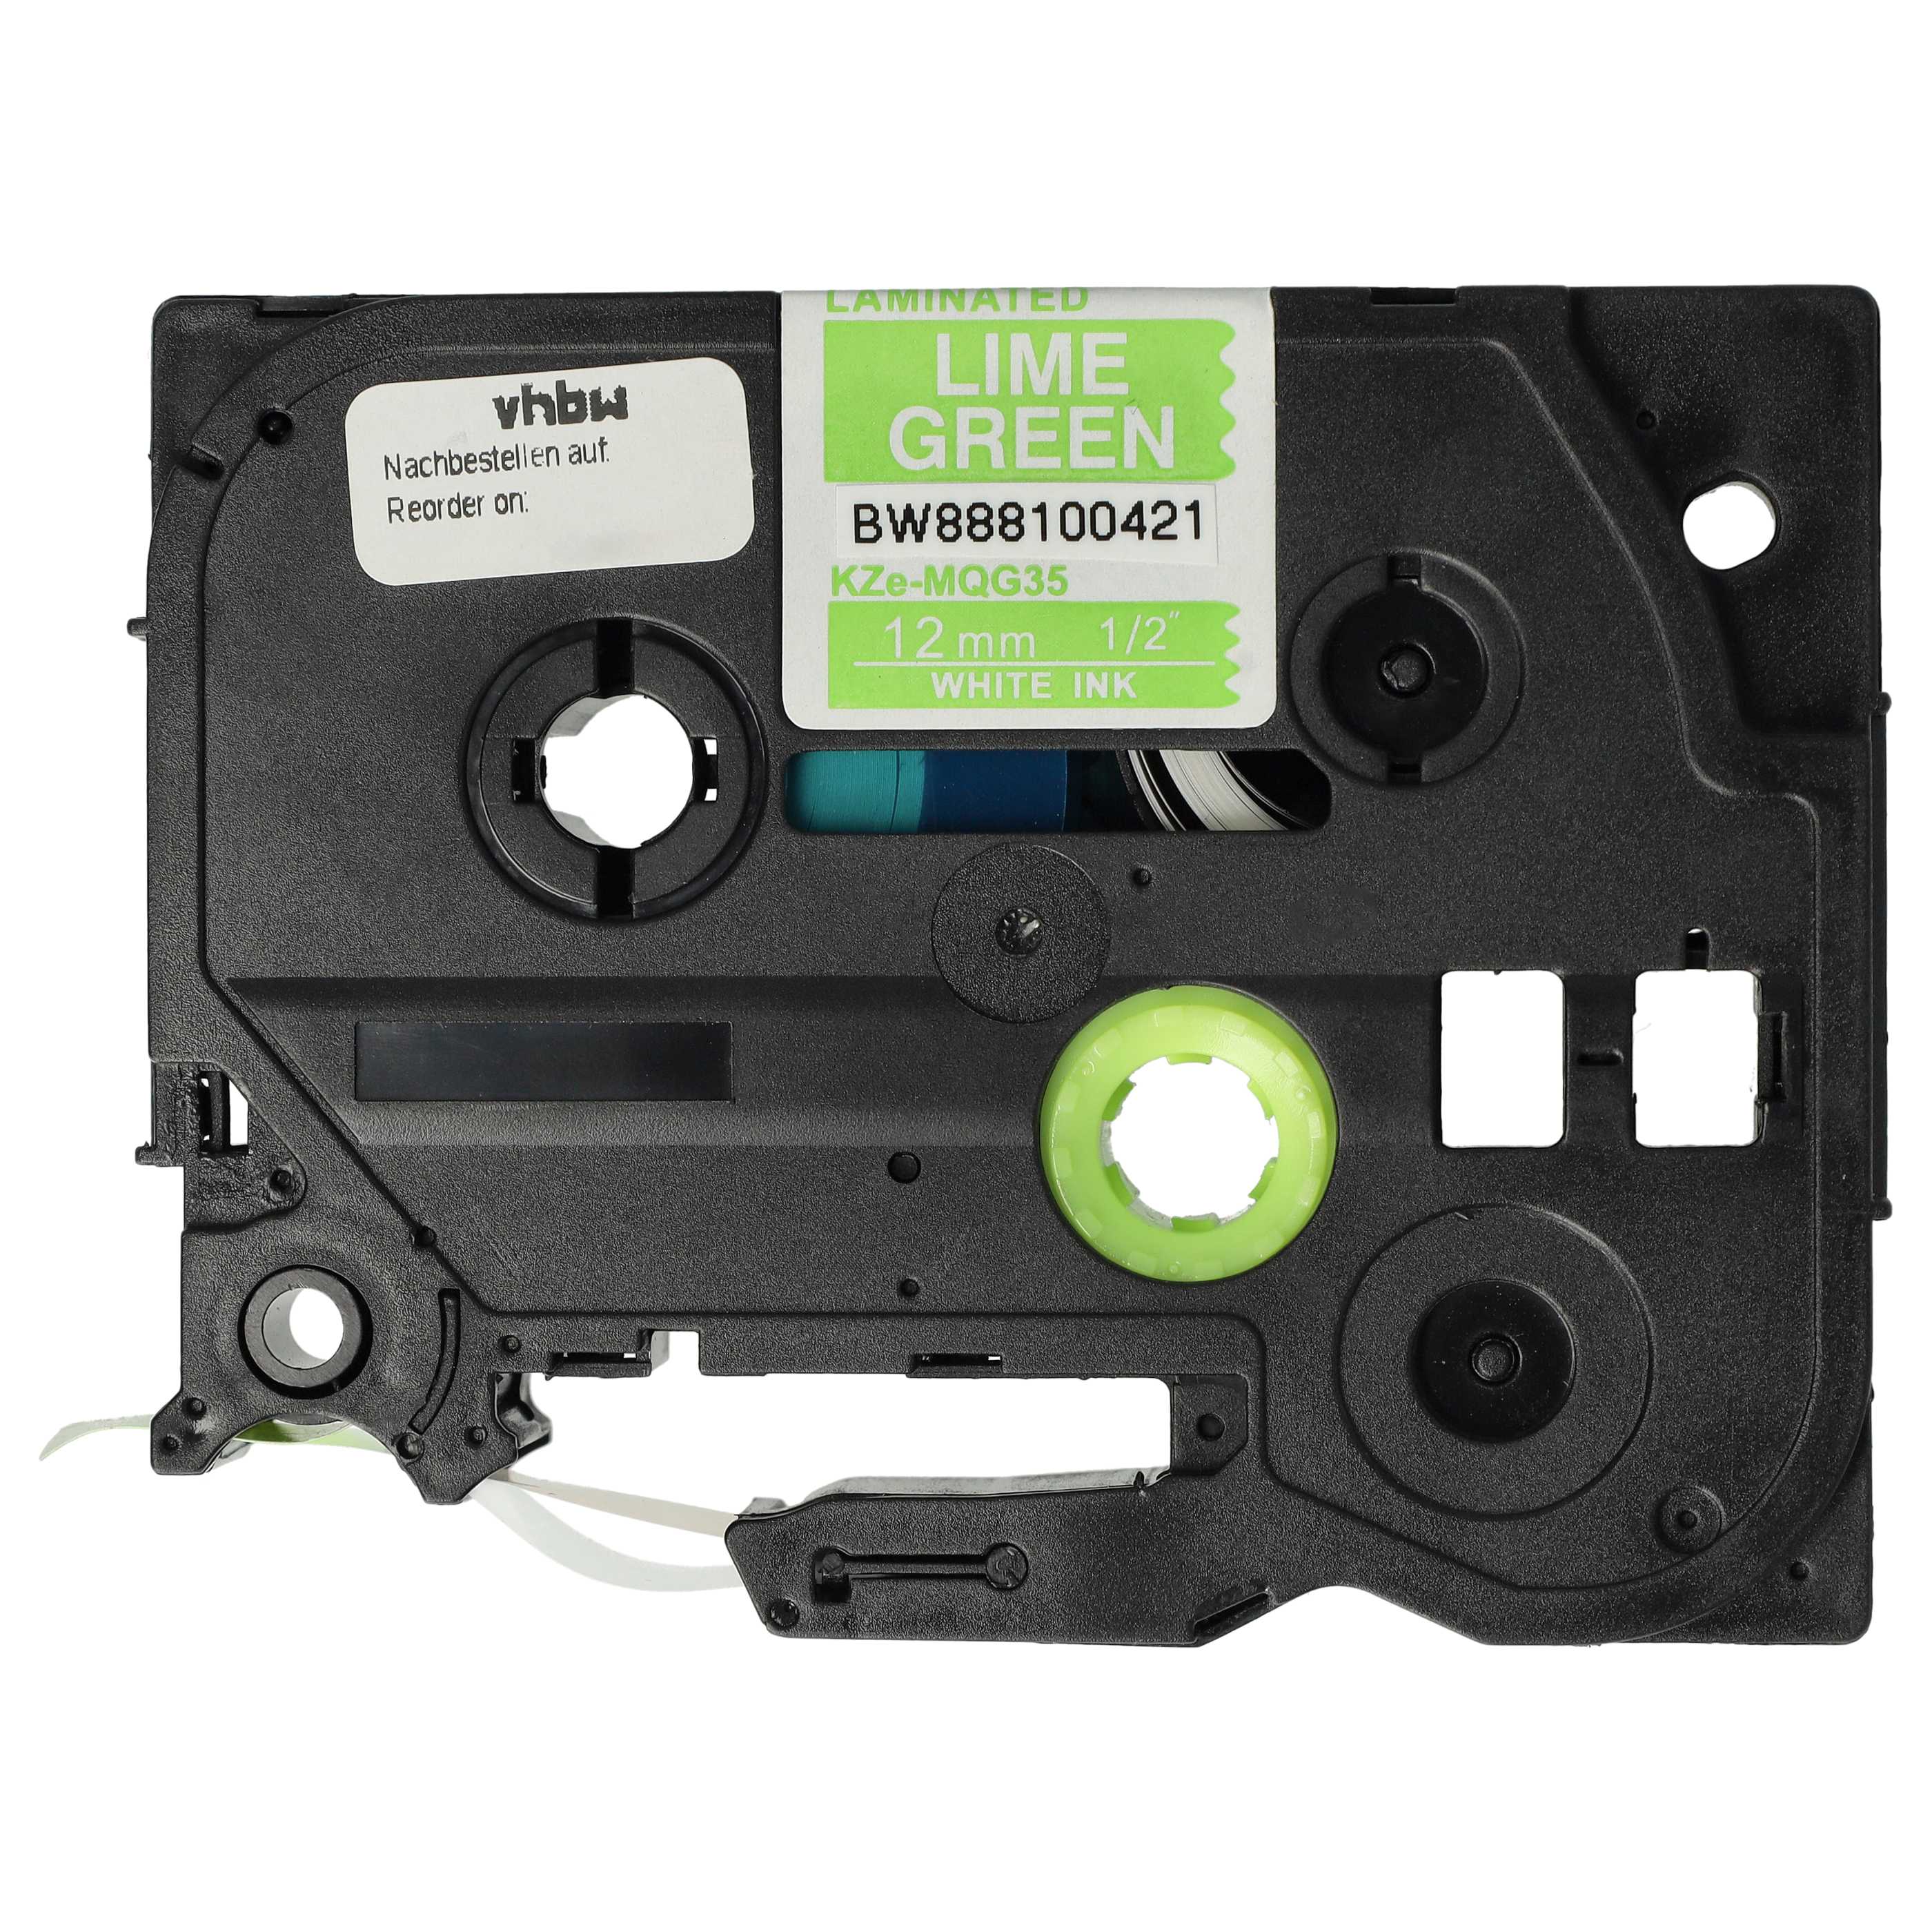 Cassette à ruban remplace Brother TZE-MQG35 - 12mm lettrage Blanc ruban Vert claire